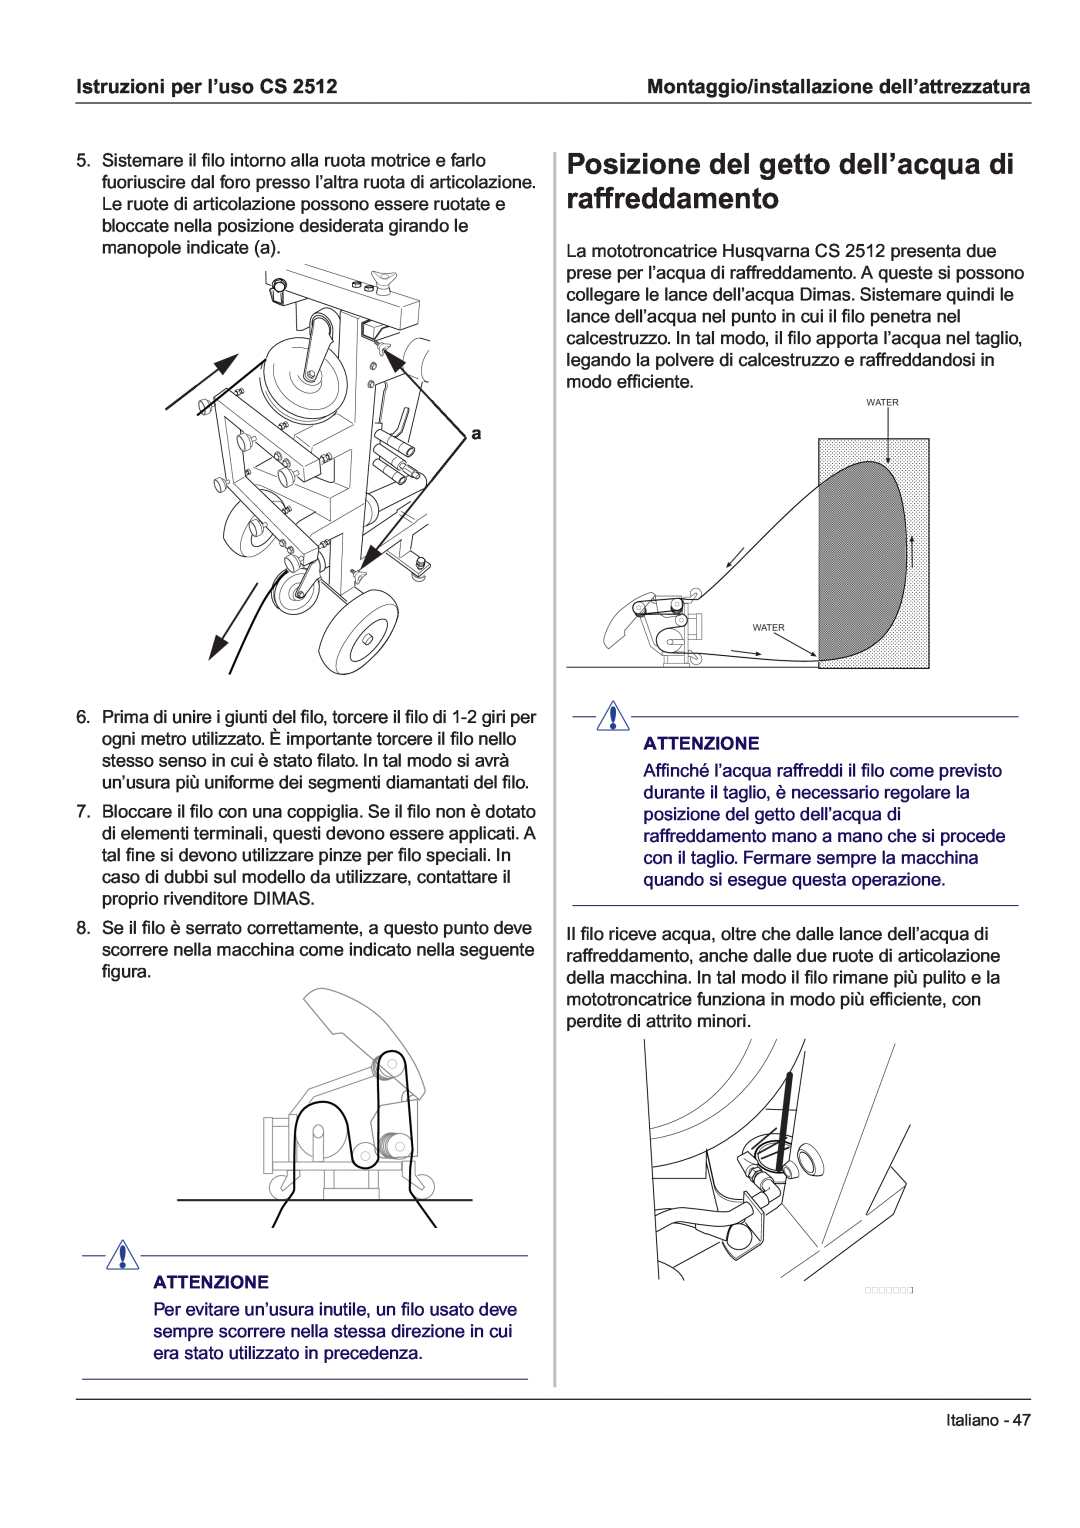 Husqvarna CS 2512 manual Posizione del getto dell’acqua di raffreddamento, Istruzioni per l’uso CS, Attenzione, Italiano 